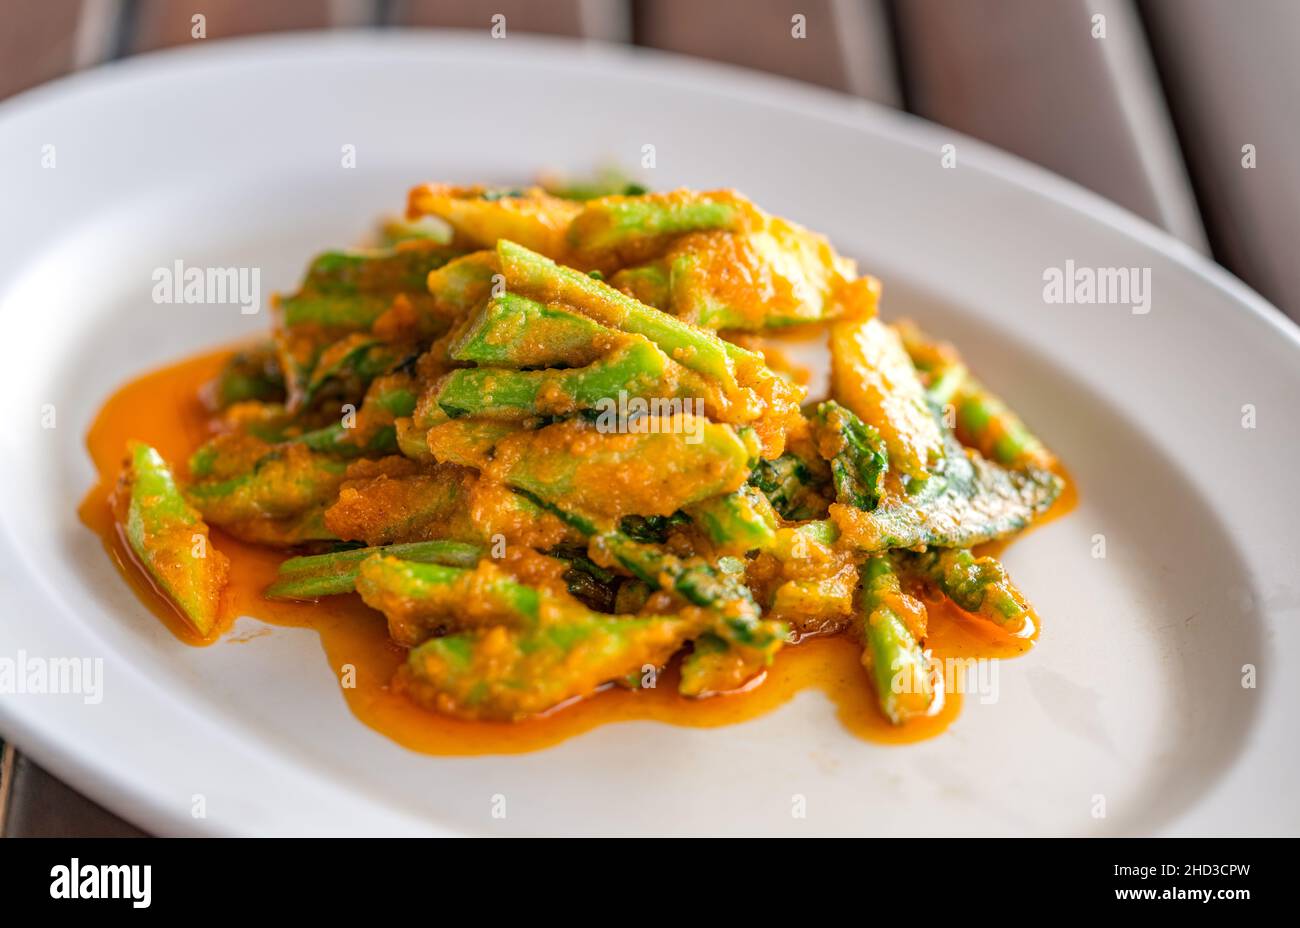 Mescolare Kale fritto o broccoli cinesi con uovo salato in piatto bianco su tavola di legno, primo piano immagine cibo tailandese di broccoli cinesi con uovo salato, natura Foto Stock